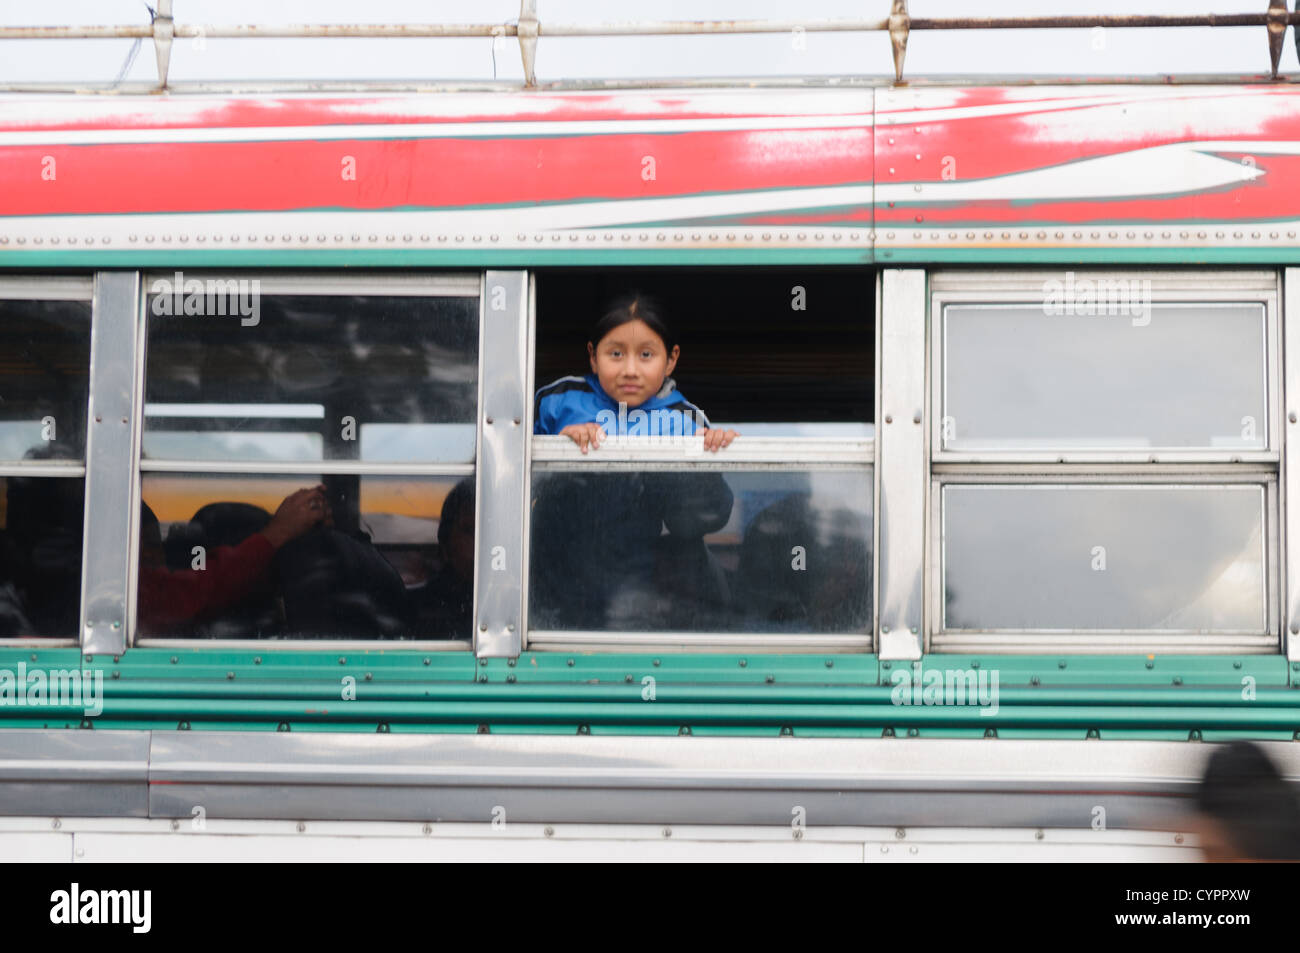 Ein junges Mädchen lehnt sich aus dem Fenster auf einem Huhn Bus hinter dem Mercado Municipal (Stadtmarkt) in Antigua, Guatemala. Aus diesem umfangreichen zentralen Busbahnhof strahlenförmig der Routen in Guatemala. Oft bunt bemalt, die Huhn-Busse sind nachgerüsteten amerikanische Schulbusse und bieten ein günstiges Transportmittel im ganzen Land. Stockfoto